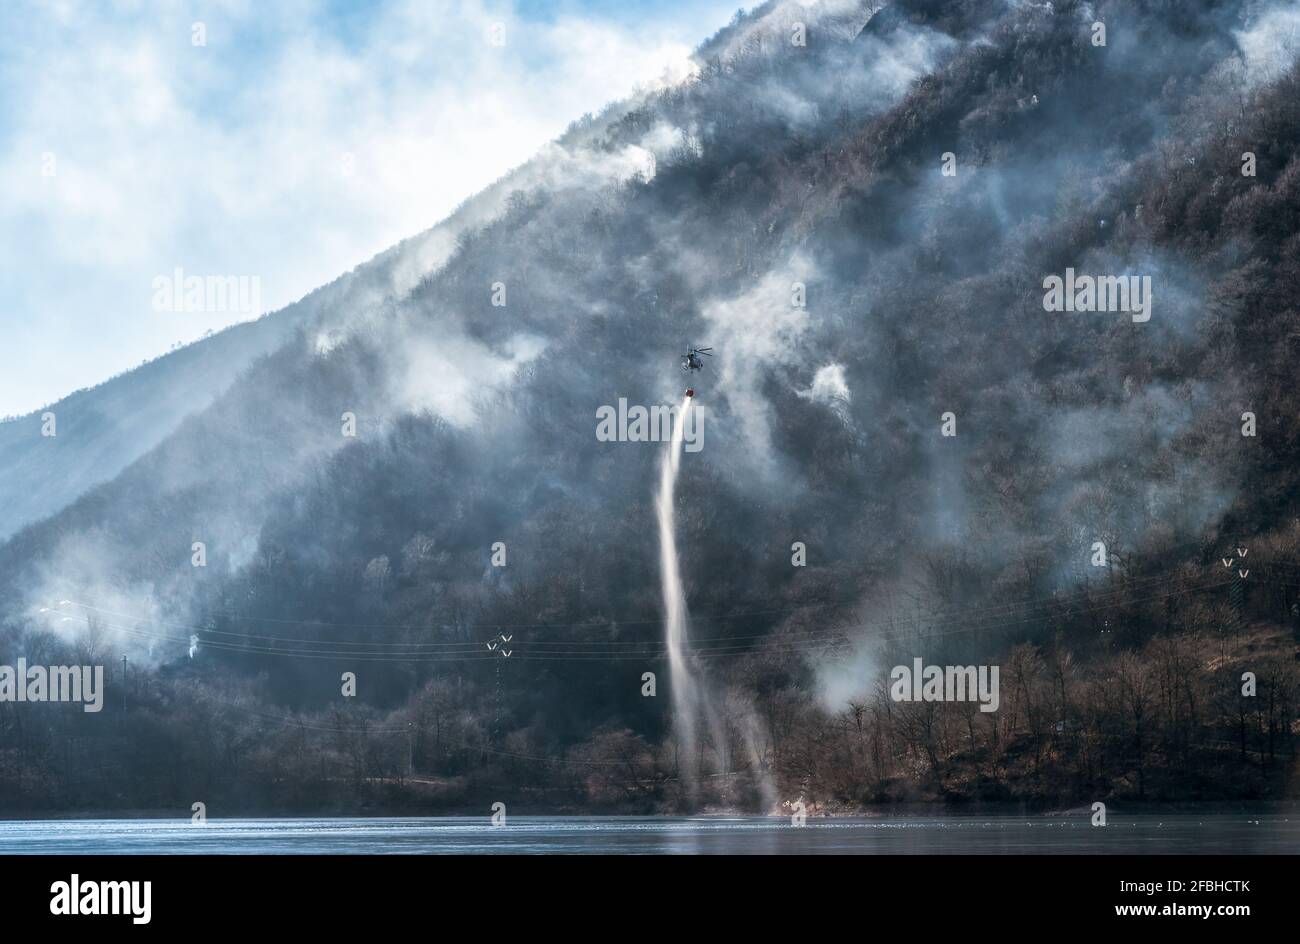 Incendie de la montagne Mondonico au-dessus du lac Ghirla avec un hélicoptère qui charge de l'eau pour l'extinction, Valganna, Lombardie, Italie. Banque D'Images